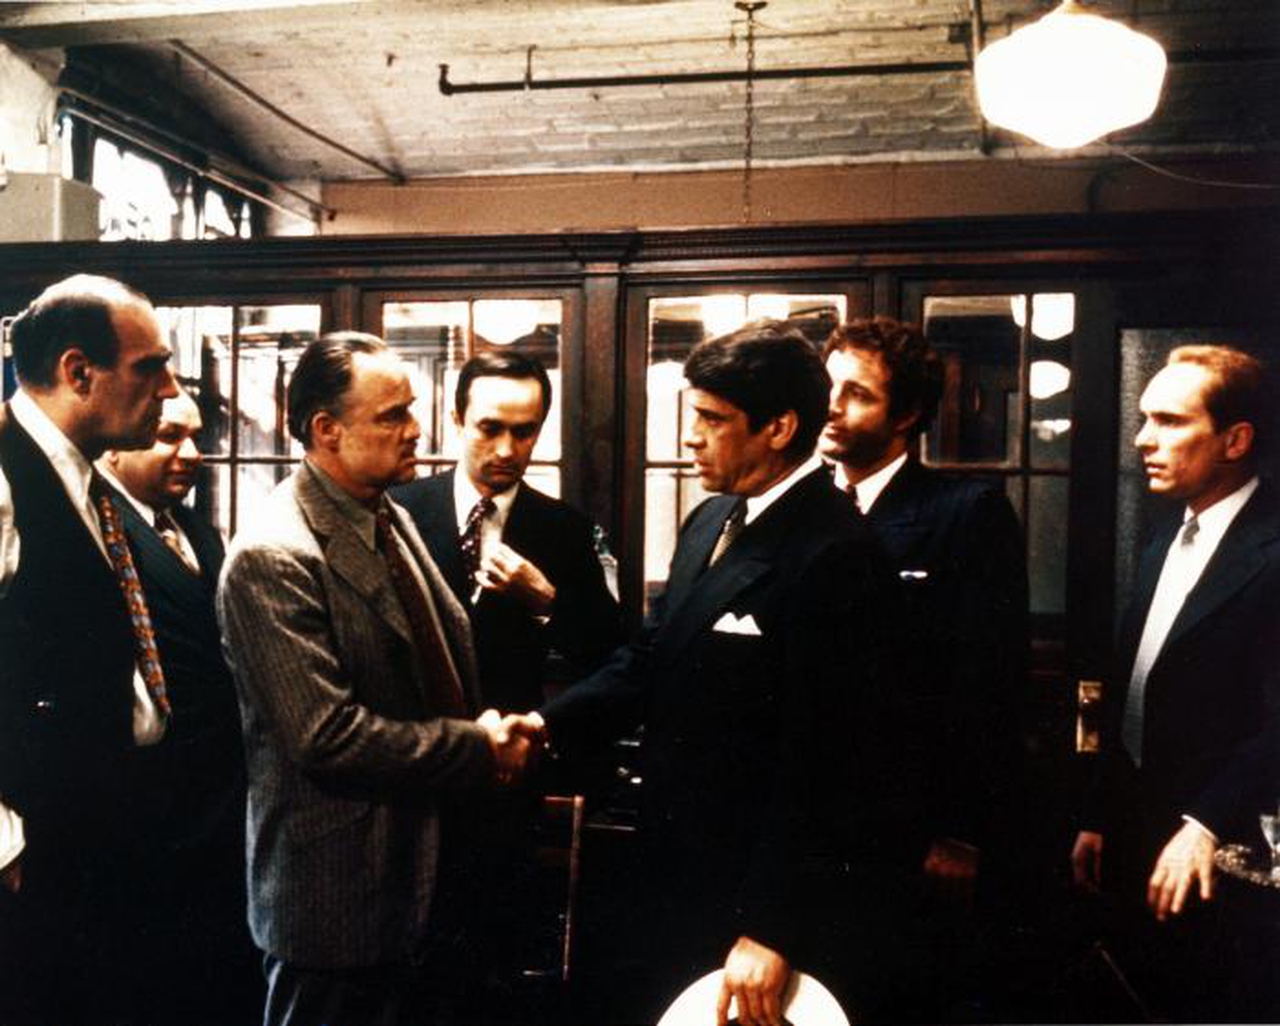 ایب ویگودا در صحنه فیلم سینمایی پدرخوانده به همراه مارلون براندو، جیمز کان، ریچارد اس. کاستلانو، رابرت دووال، آل لتیری و جان کازال